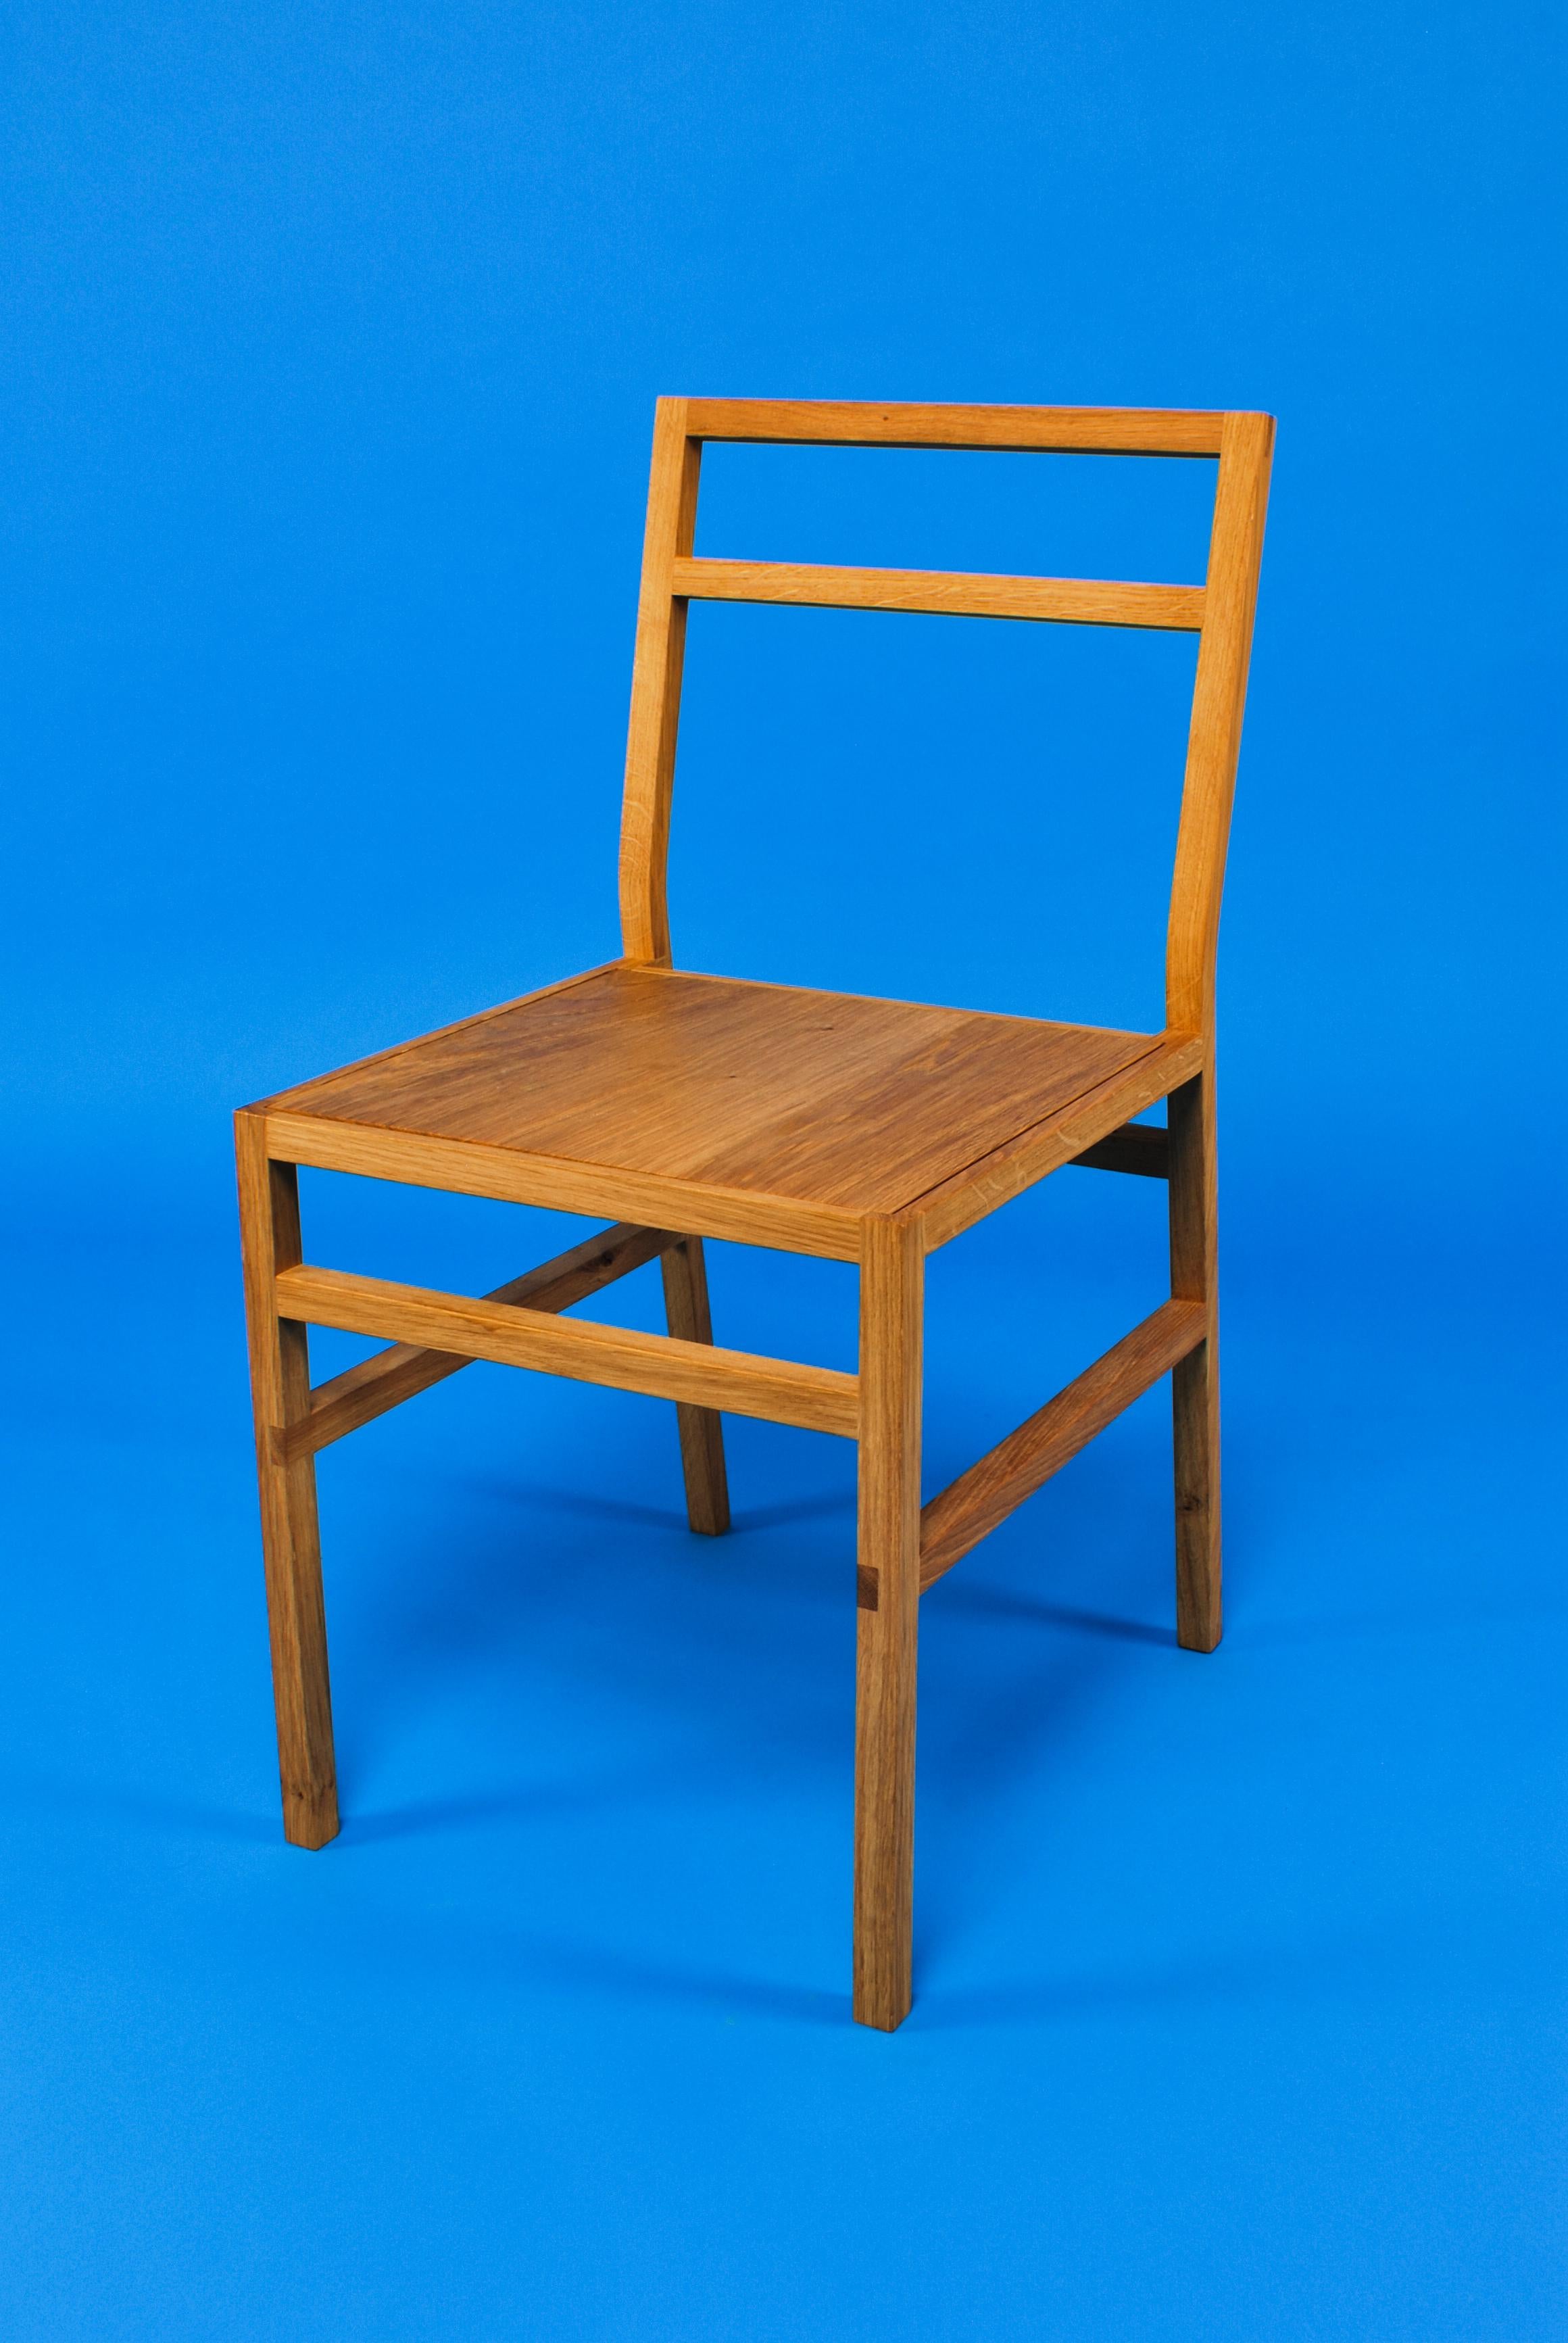 Chaise de salle à manger Organic Modern. Créé par Loose Fit et fabriqué à la main sur commande au Royaume-Uni. Disponible dans un choix de trois essences - chêne anglais, frêne ou London Plane.

Chaise de salle à manger en chêne simple. D'apparence